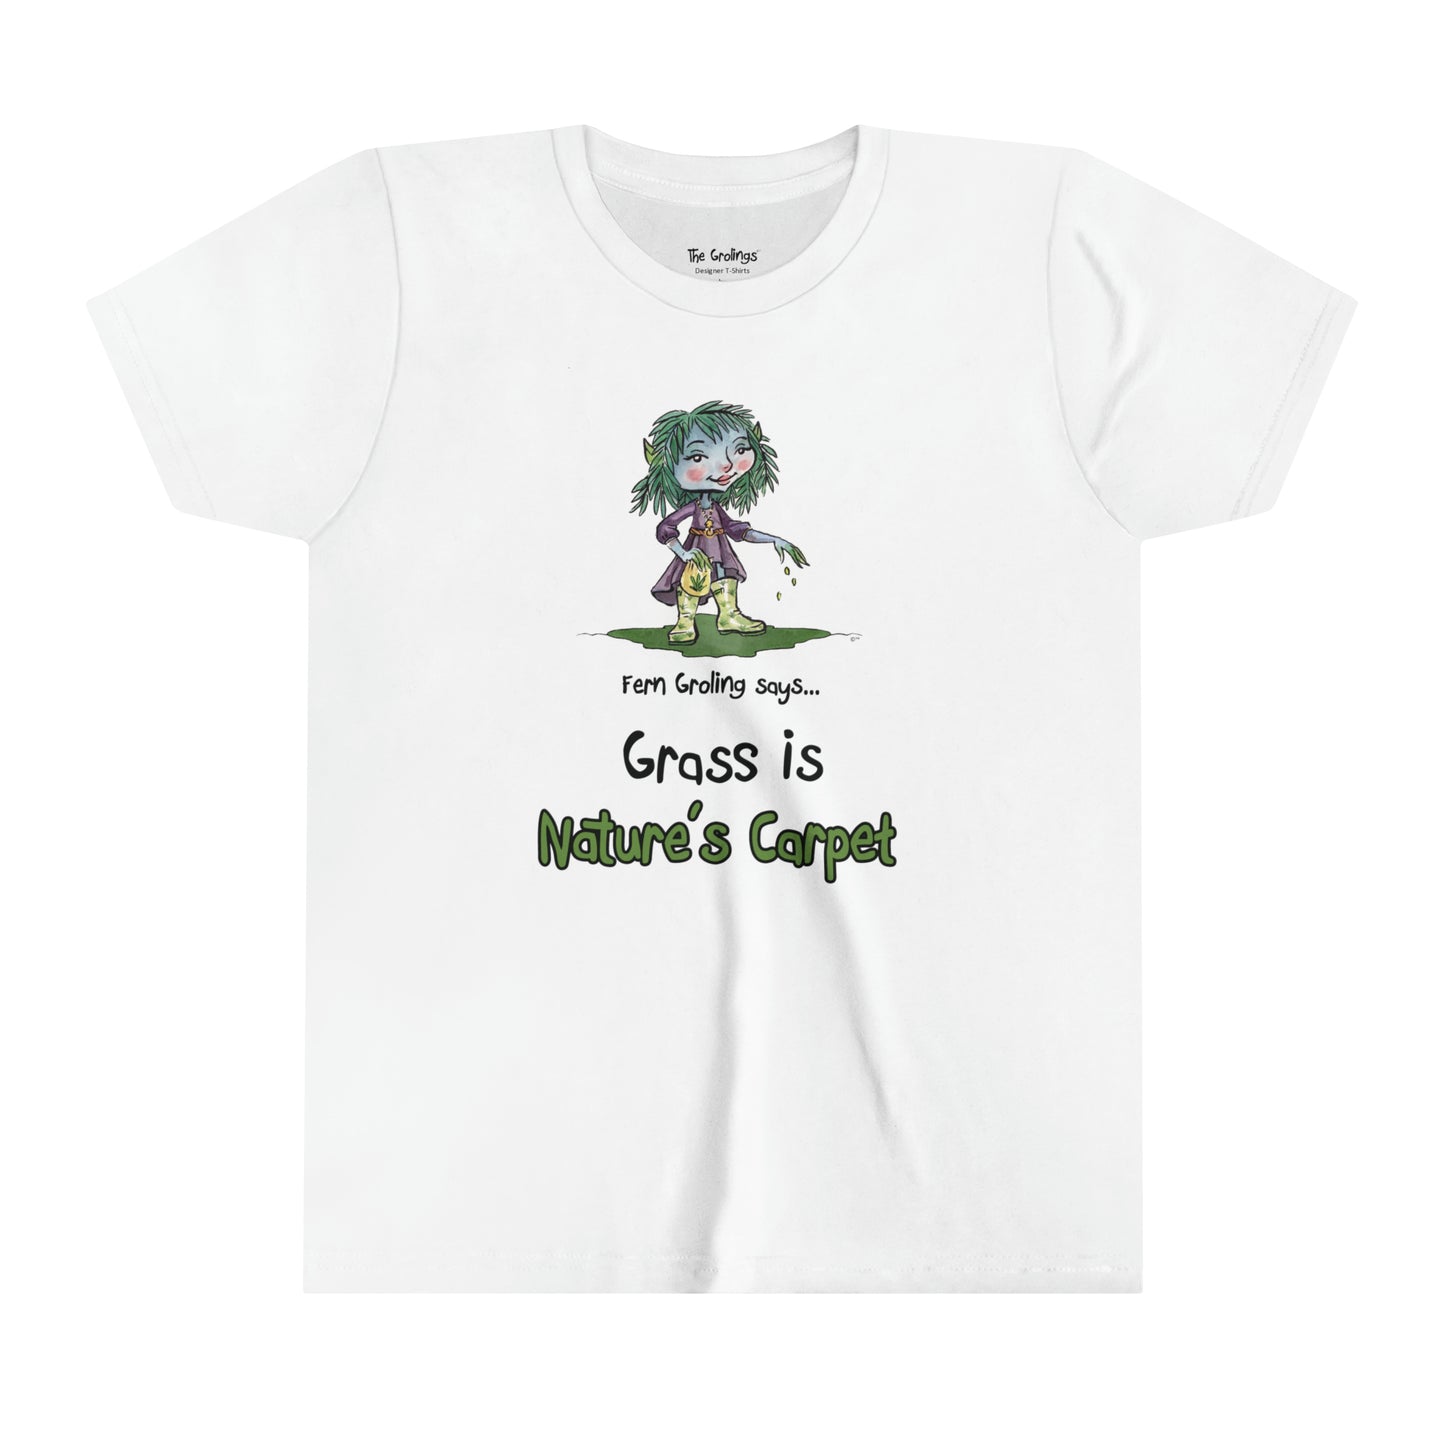 USA Fern Groling Grass is Nature’s Carpet Designer Kids T-shirt